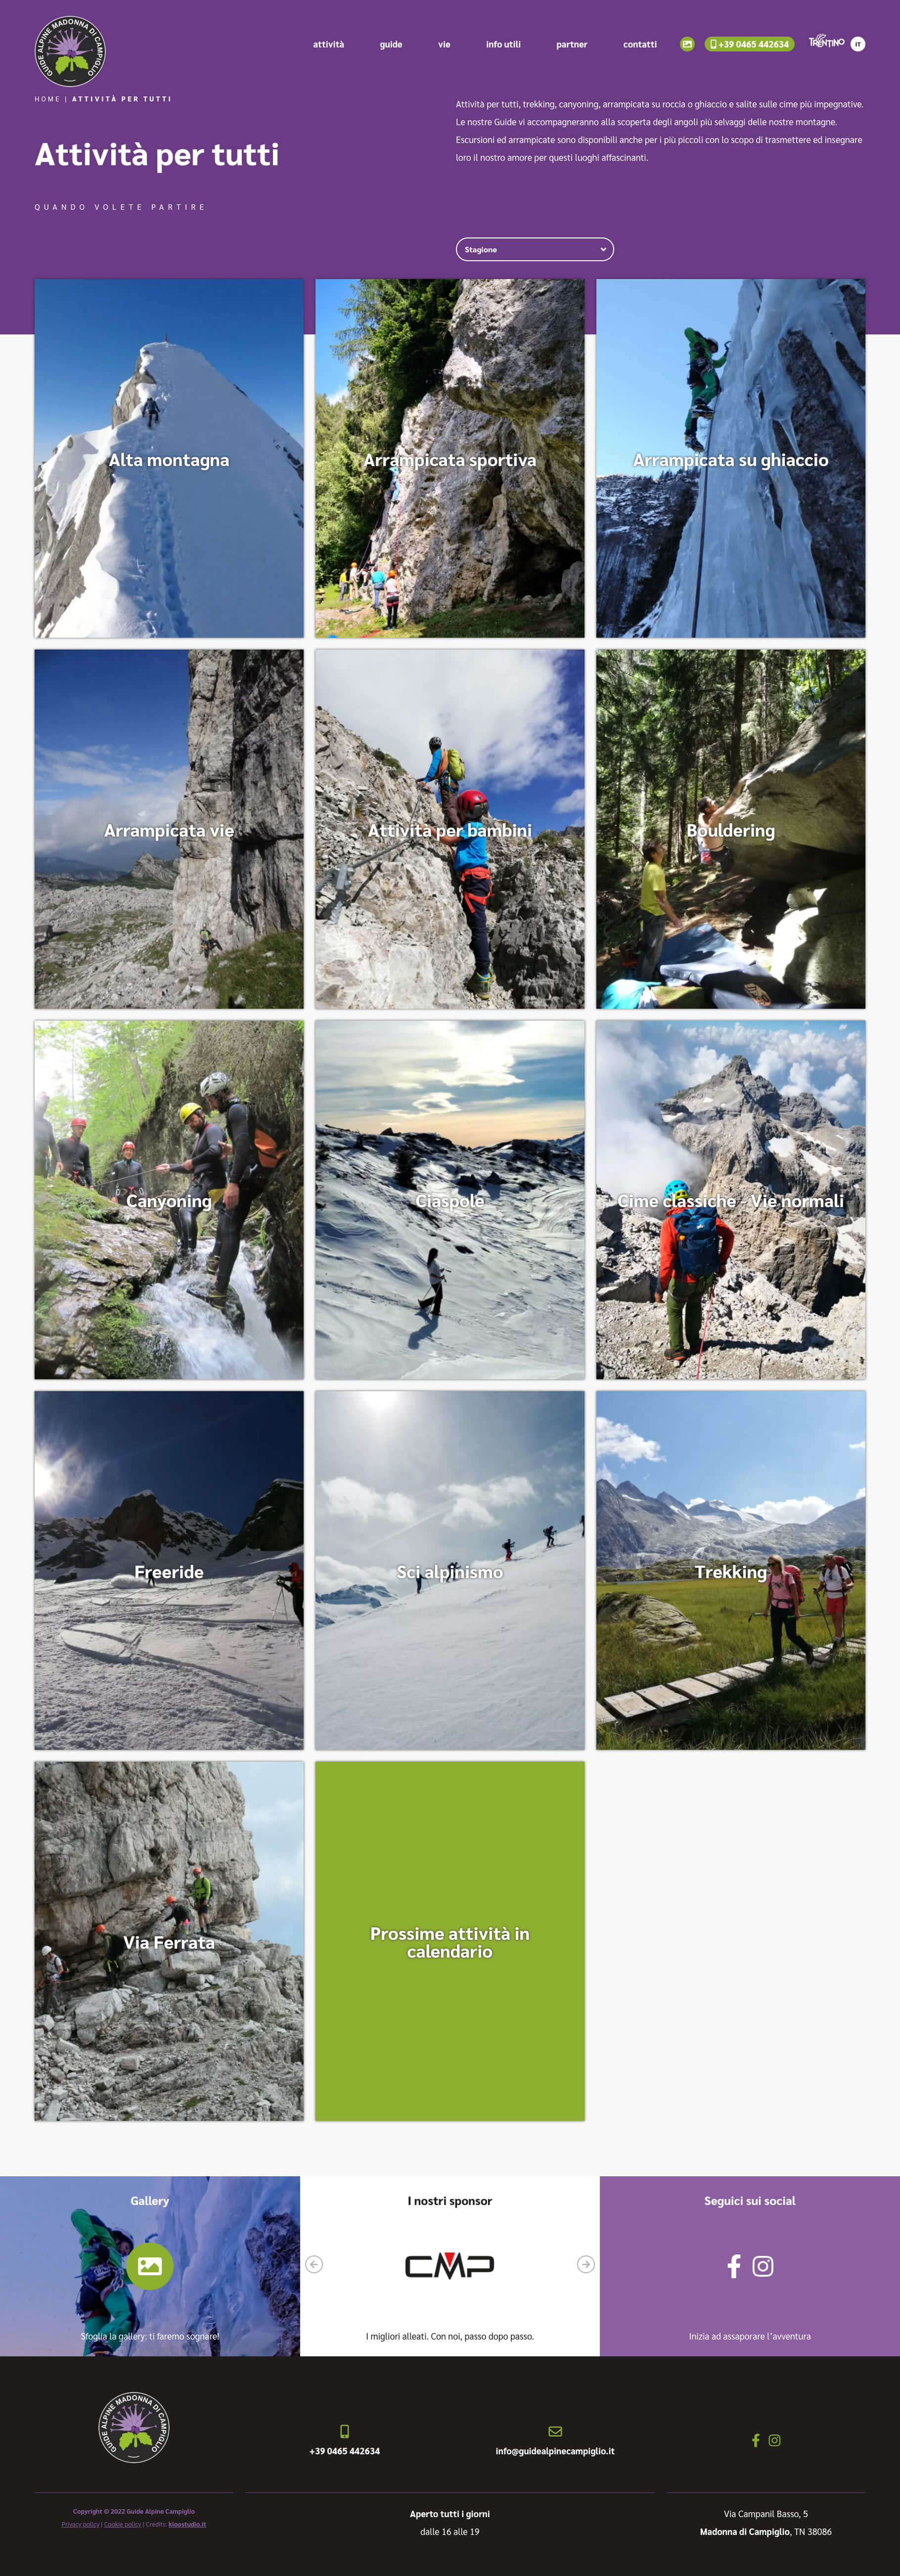 Guide Alpine Campiglio